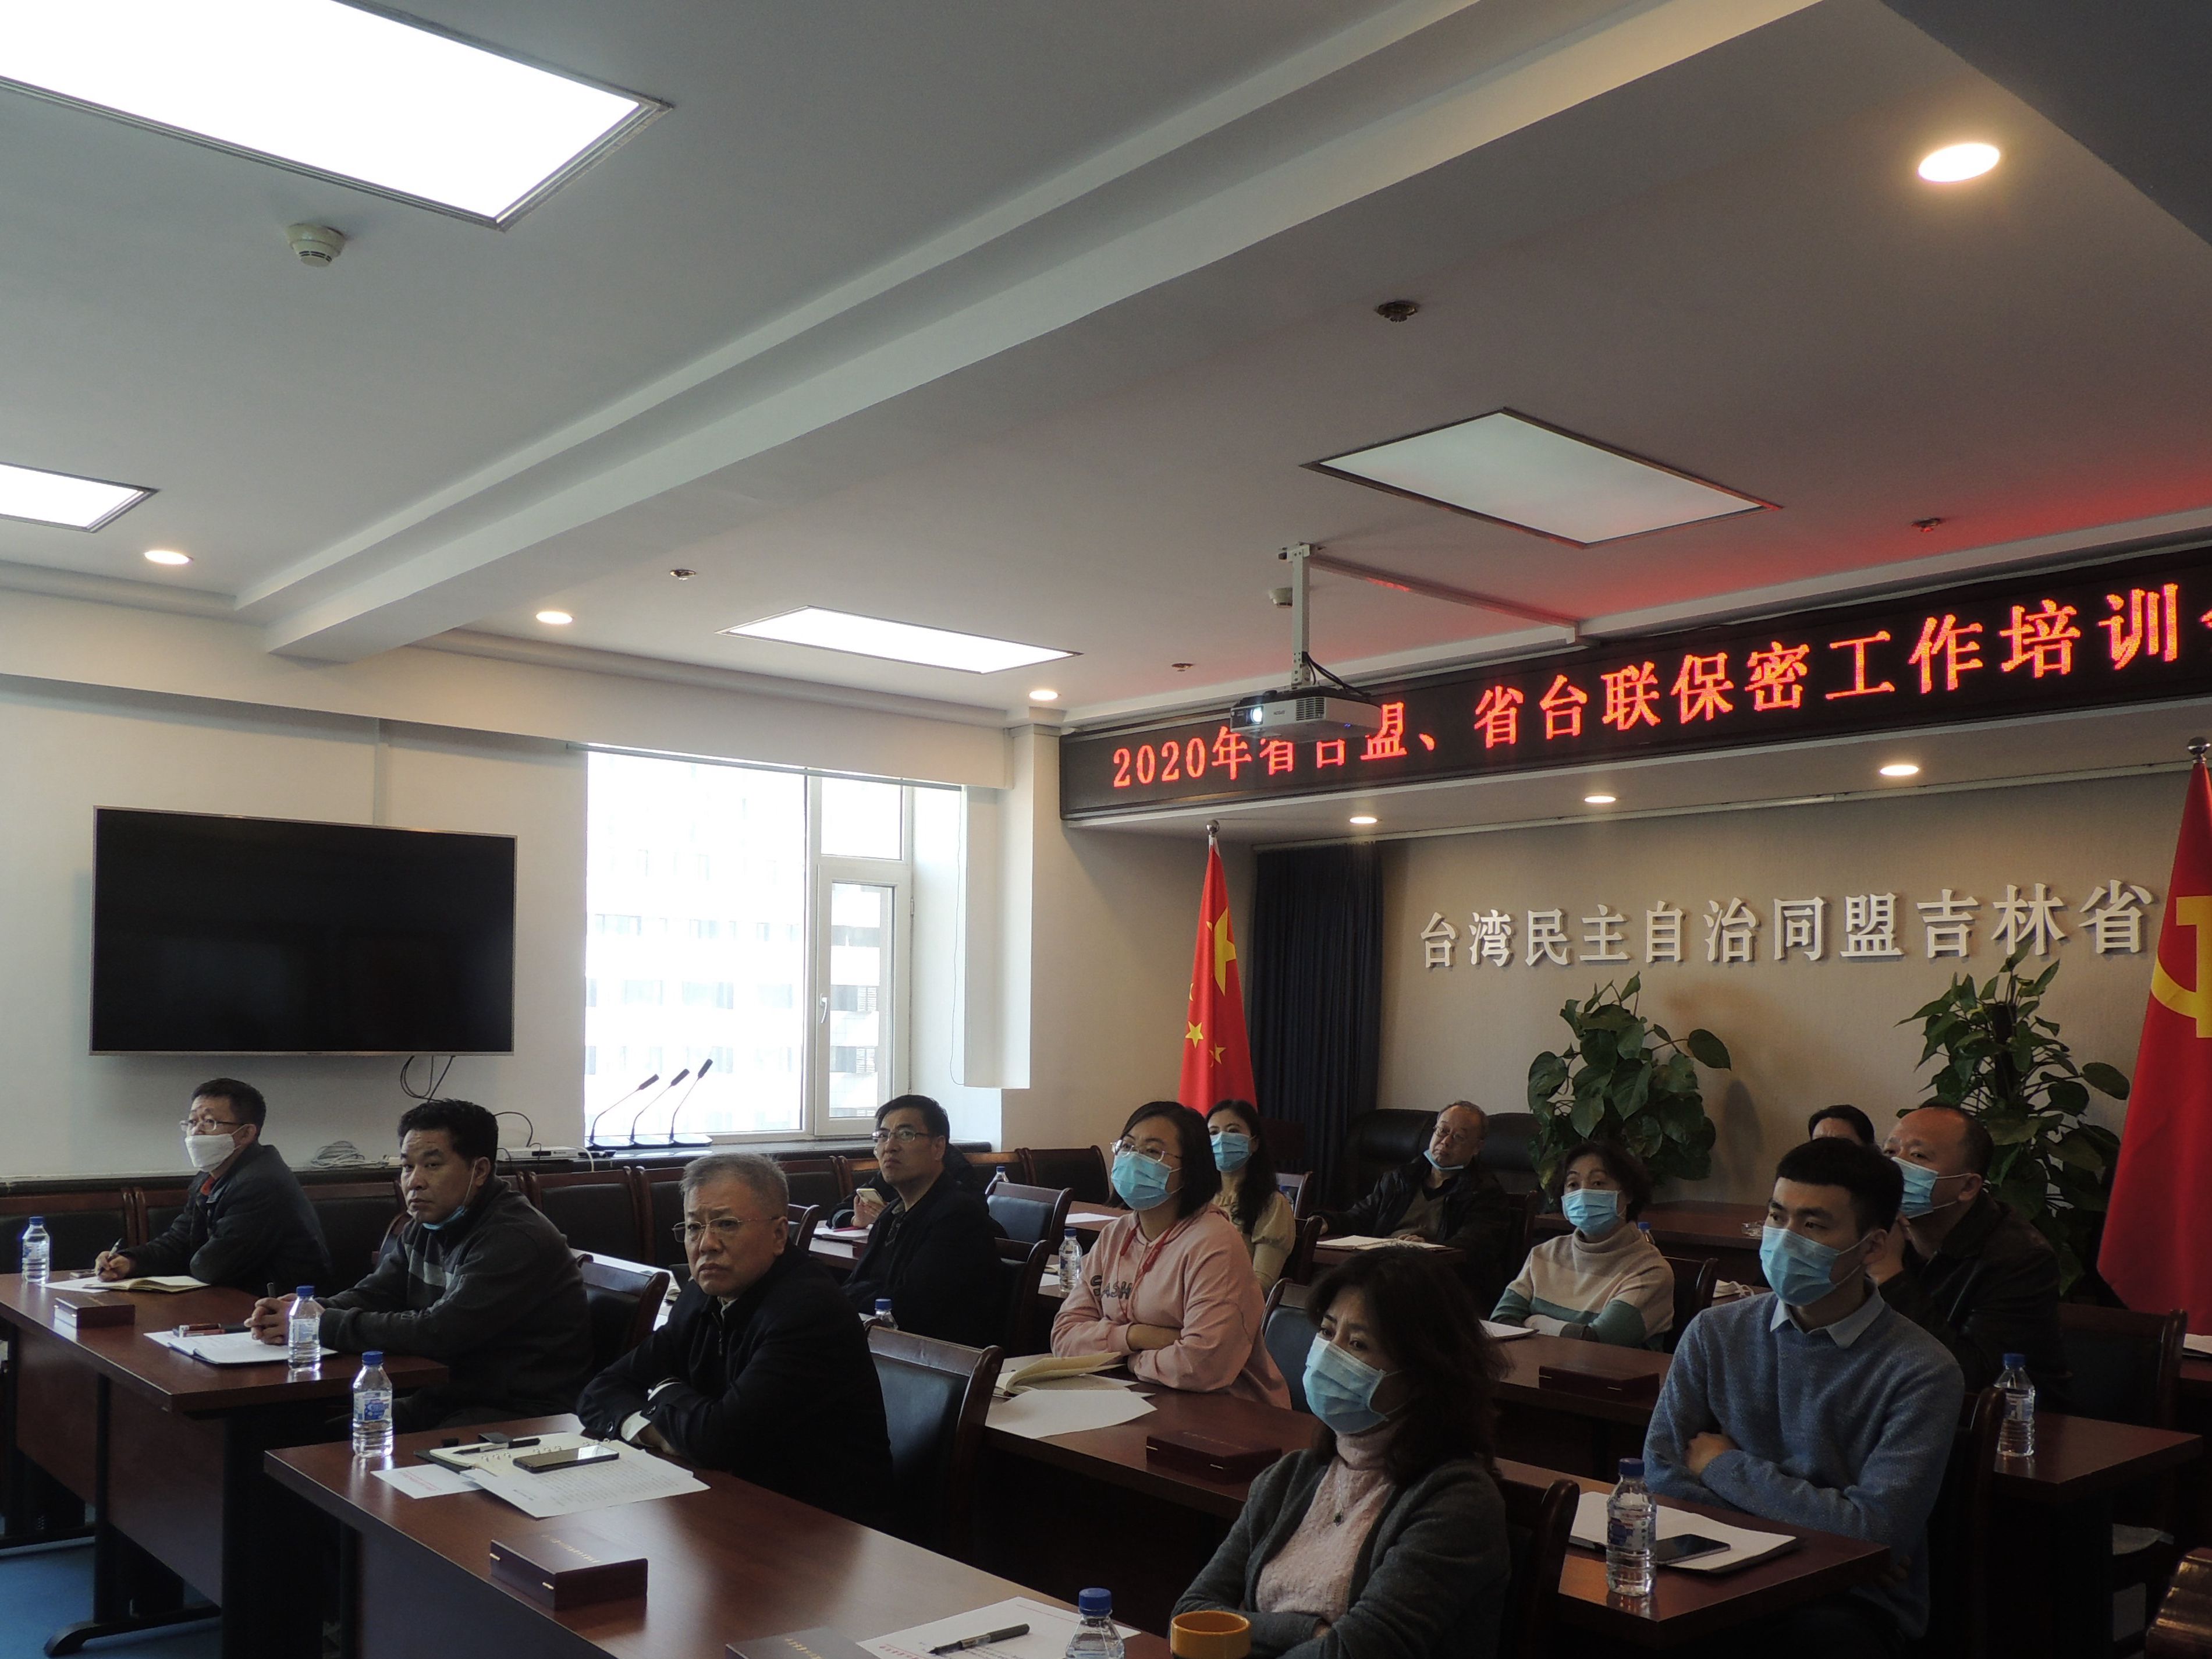 台盟吉林省委会召开2020年保密工作培训会议